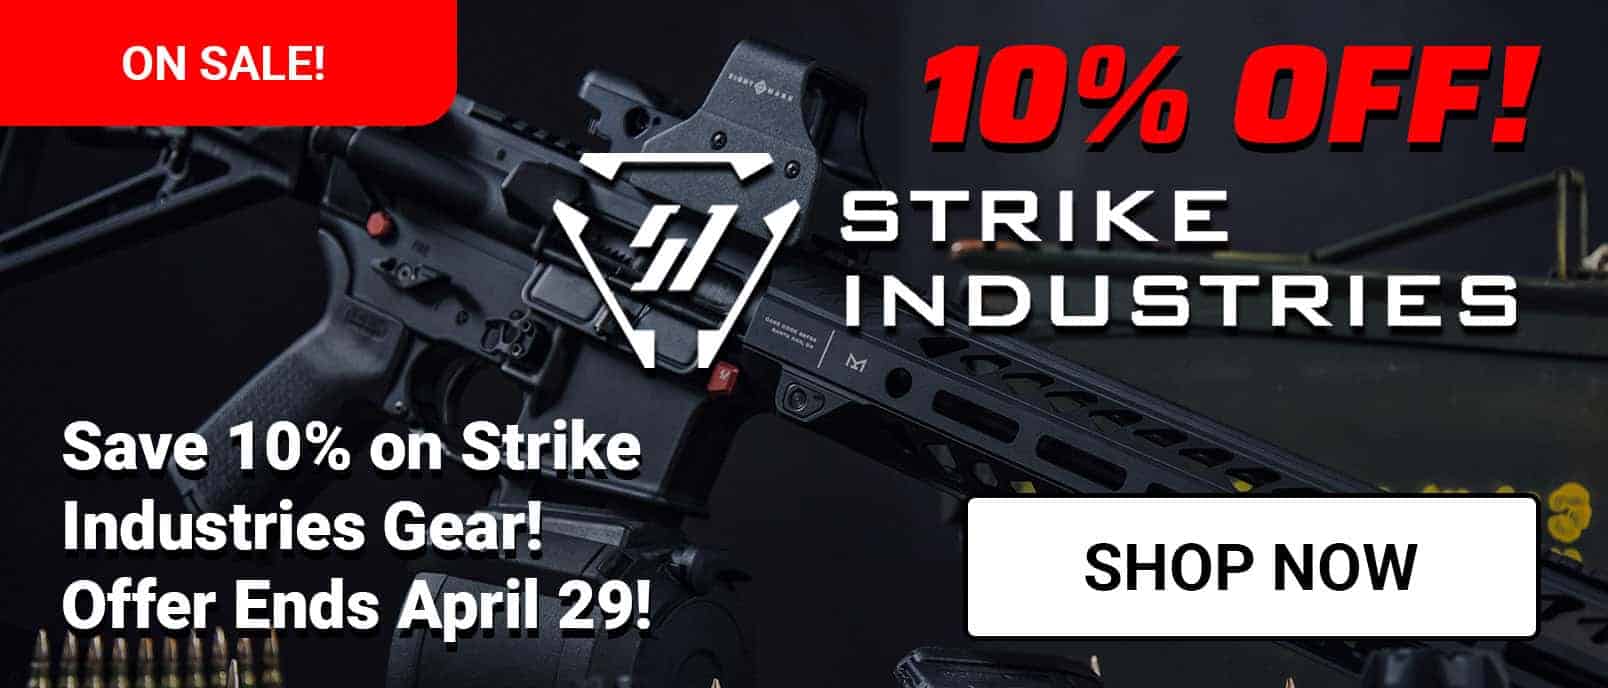 Save 10% on Strike Industries!